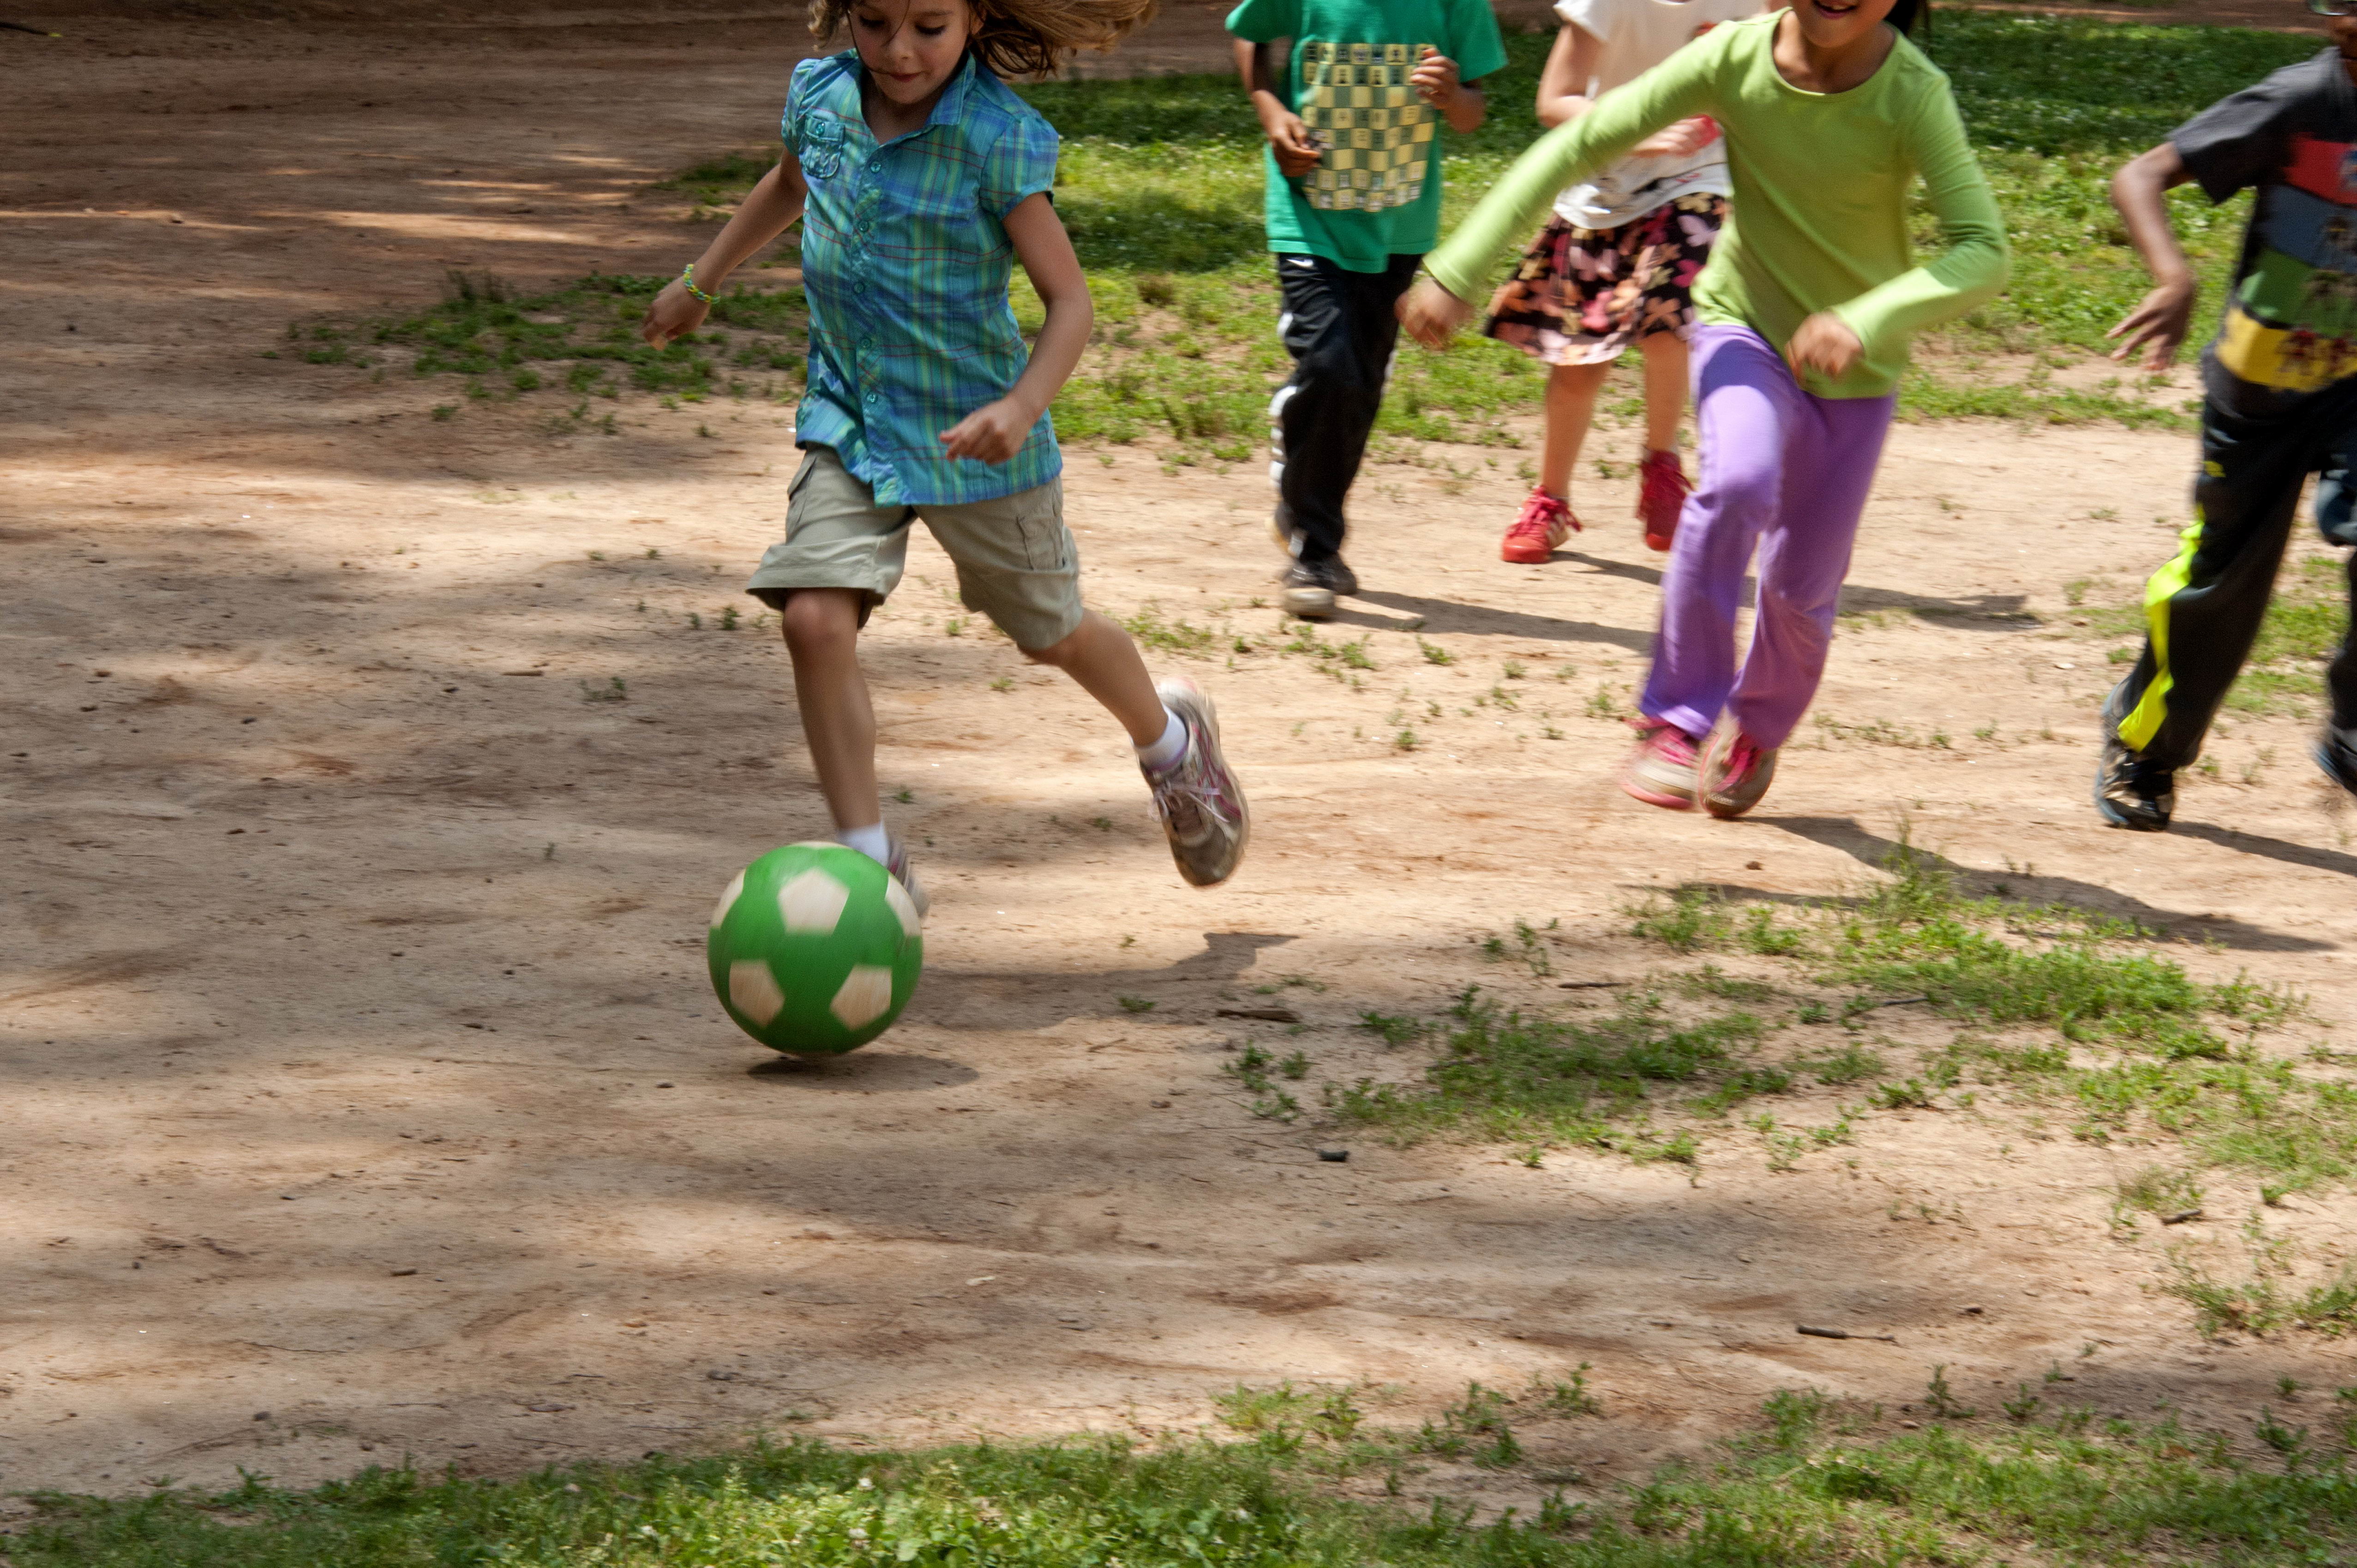 Imagen gratis: niños, niñas, juego, informal, juego, fútbol